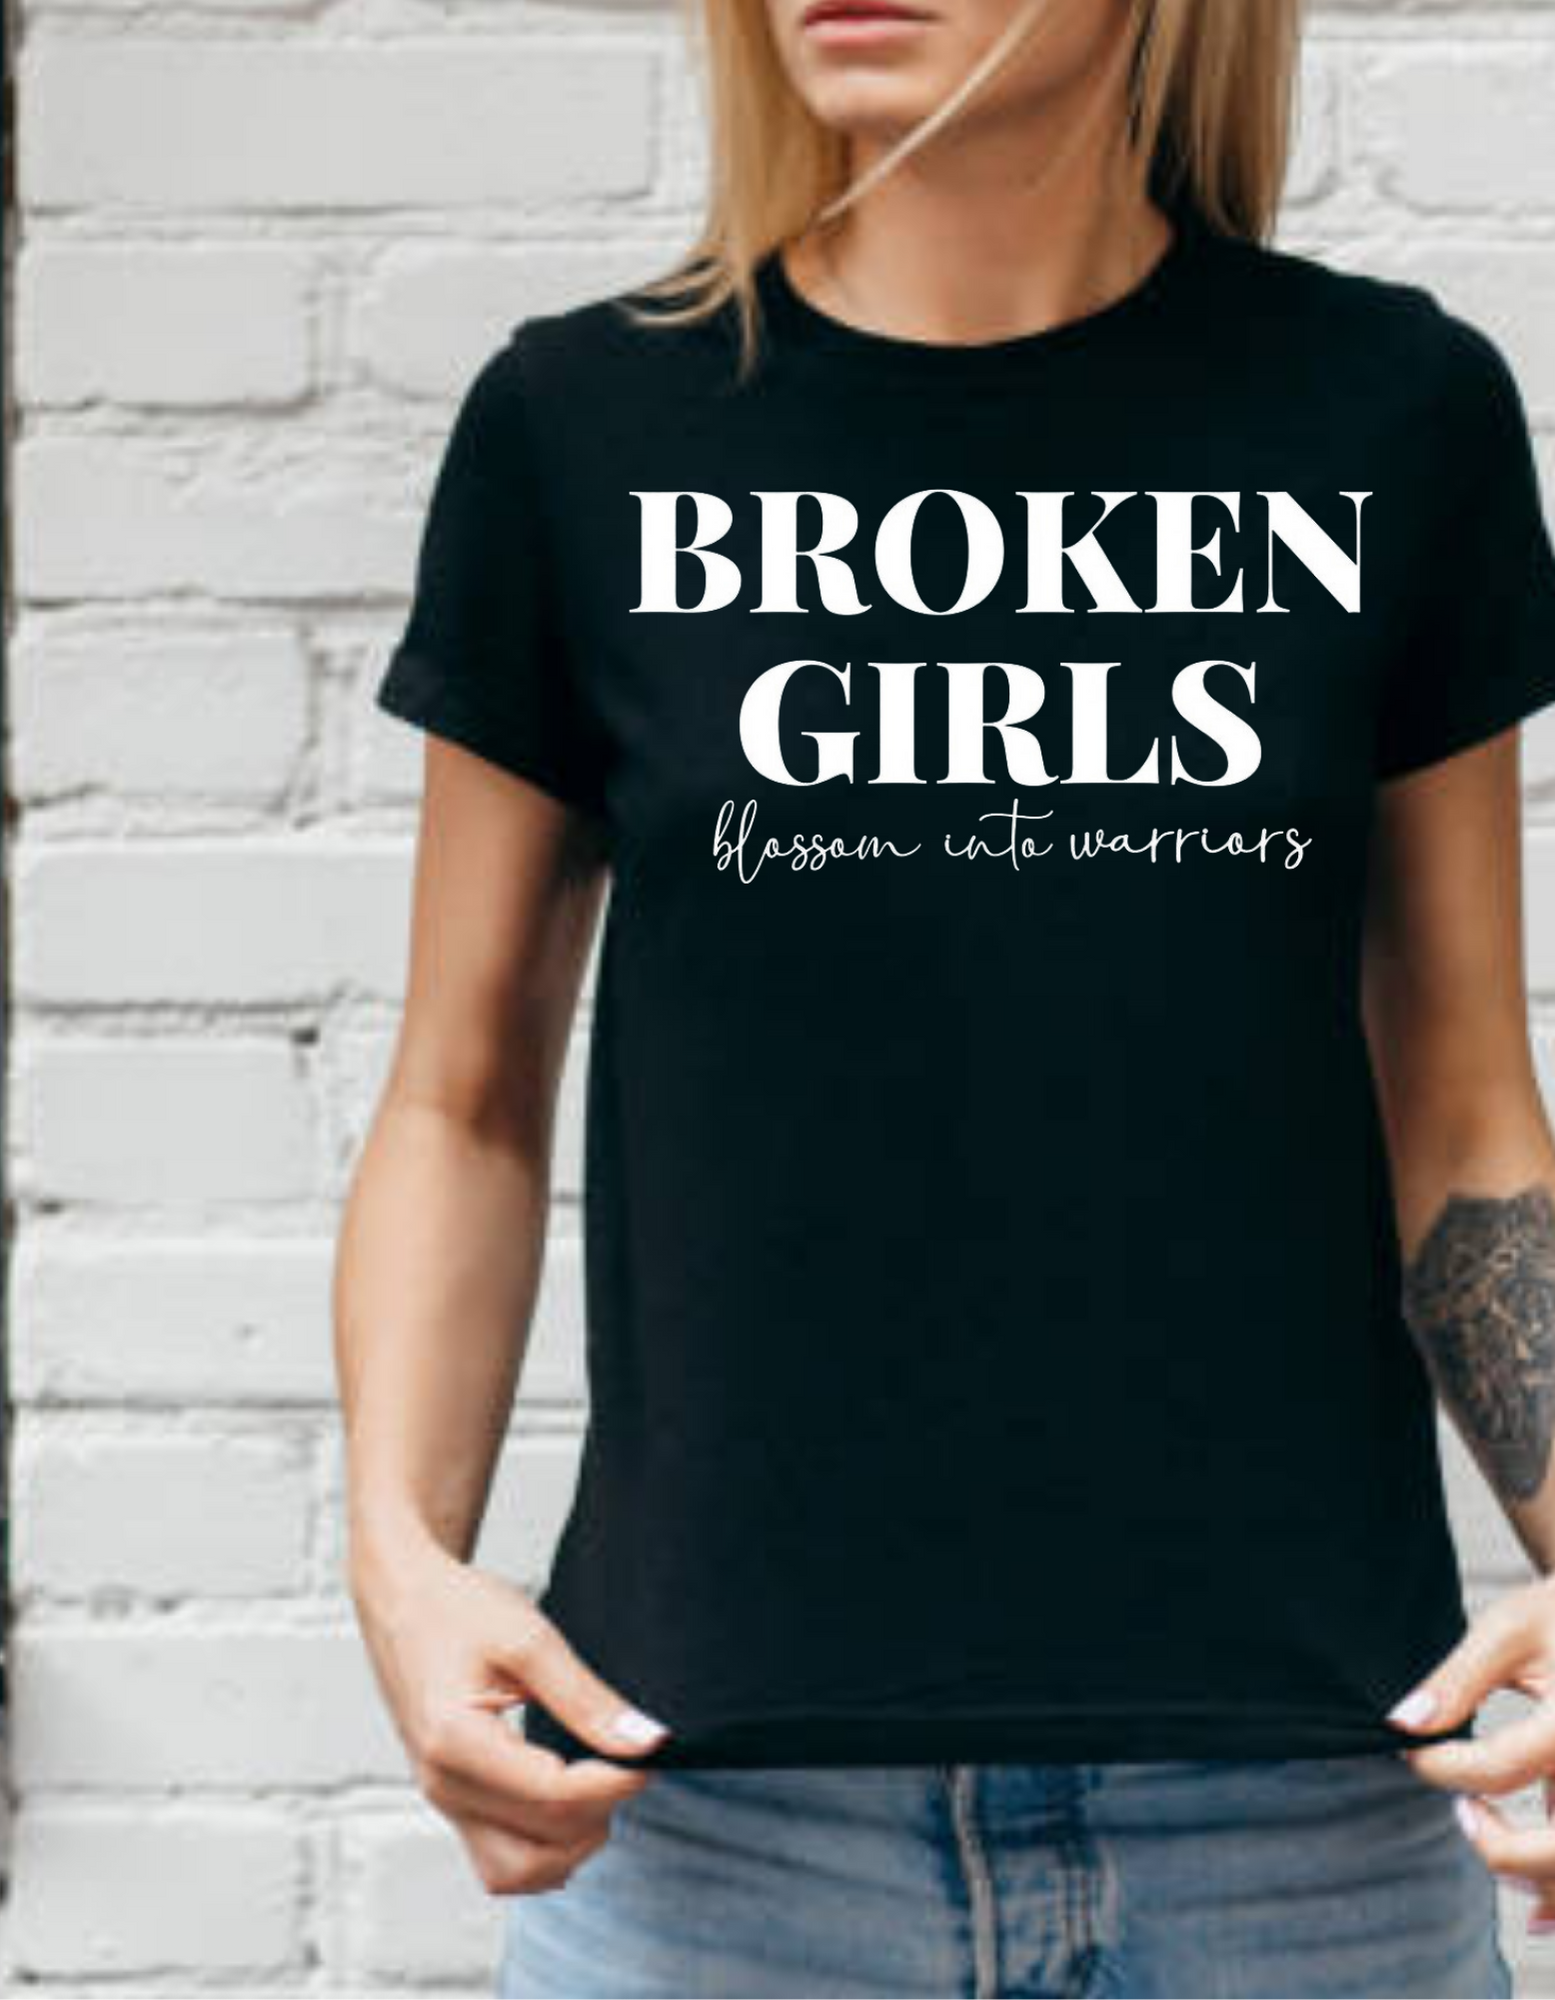 Broken Girls become Warriors